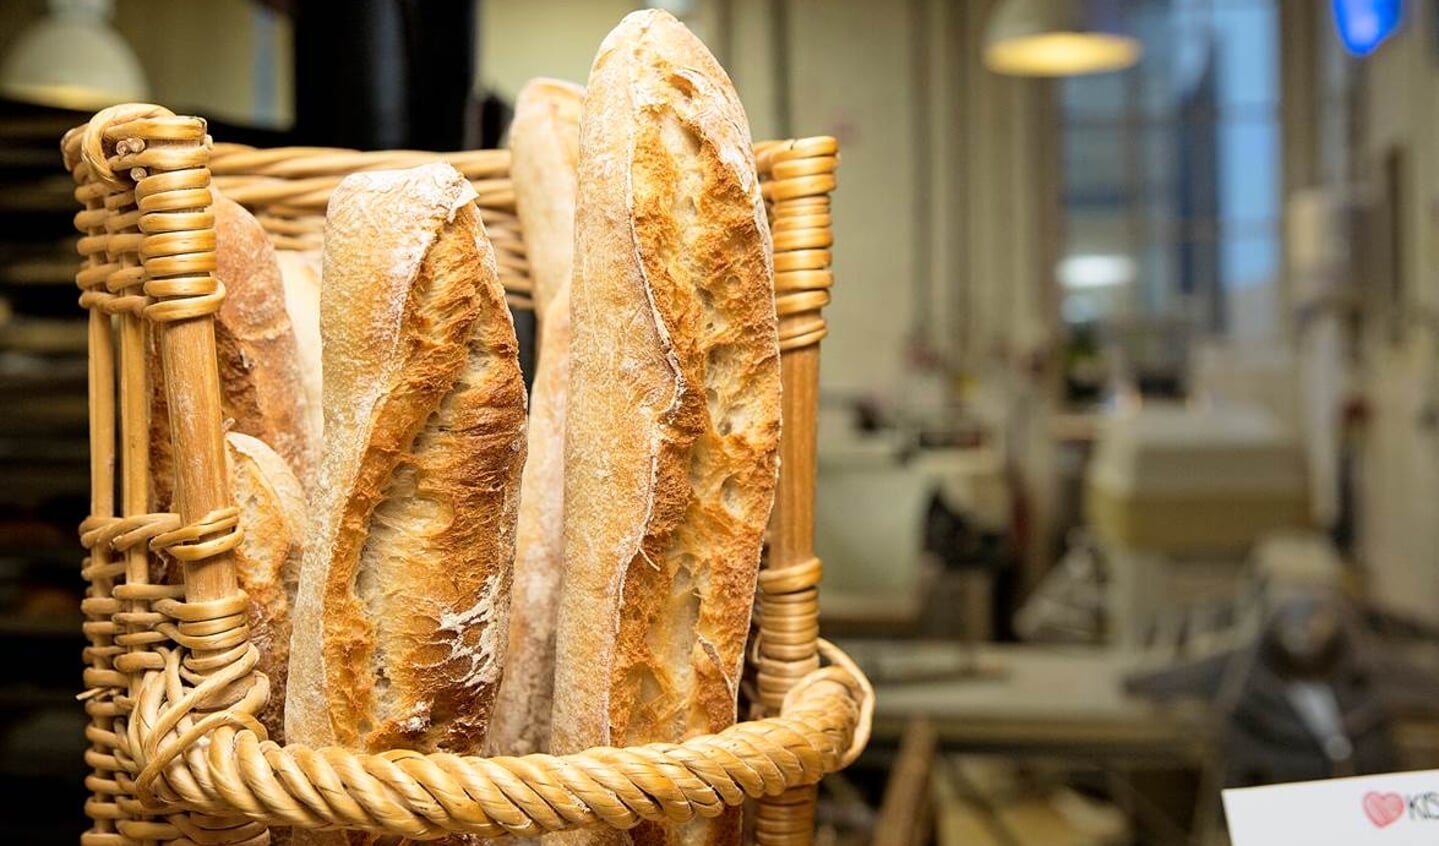 Het lekkerste stokbrood uit de Zaanstreek? De KISS Bakery gebruikt zout uit Frankrijk, meel van een Limburgse molen en een bakproces met desem in plaats van gist. 